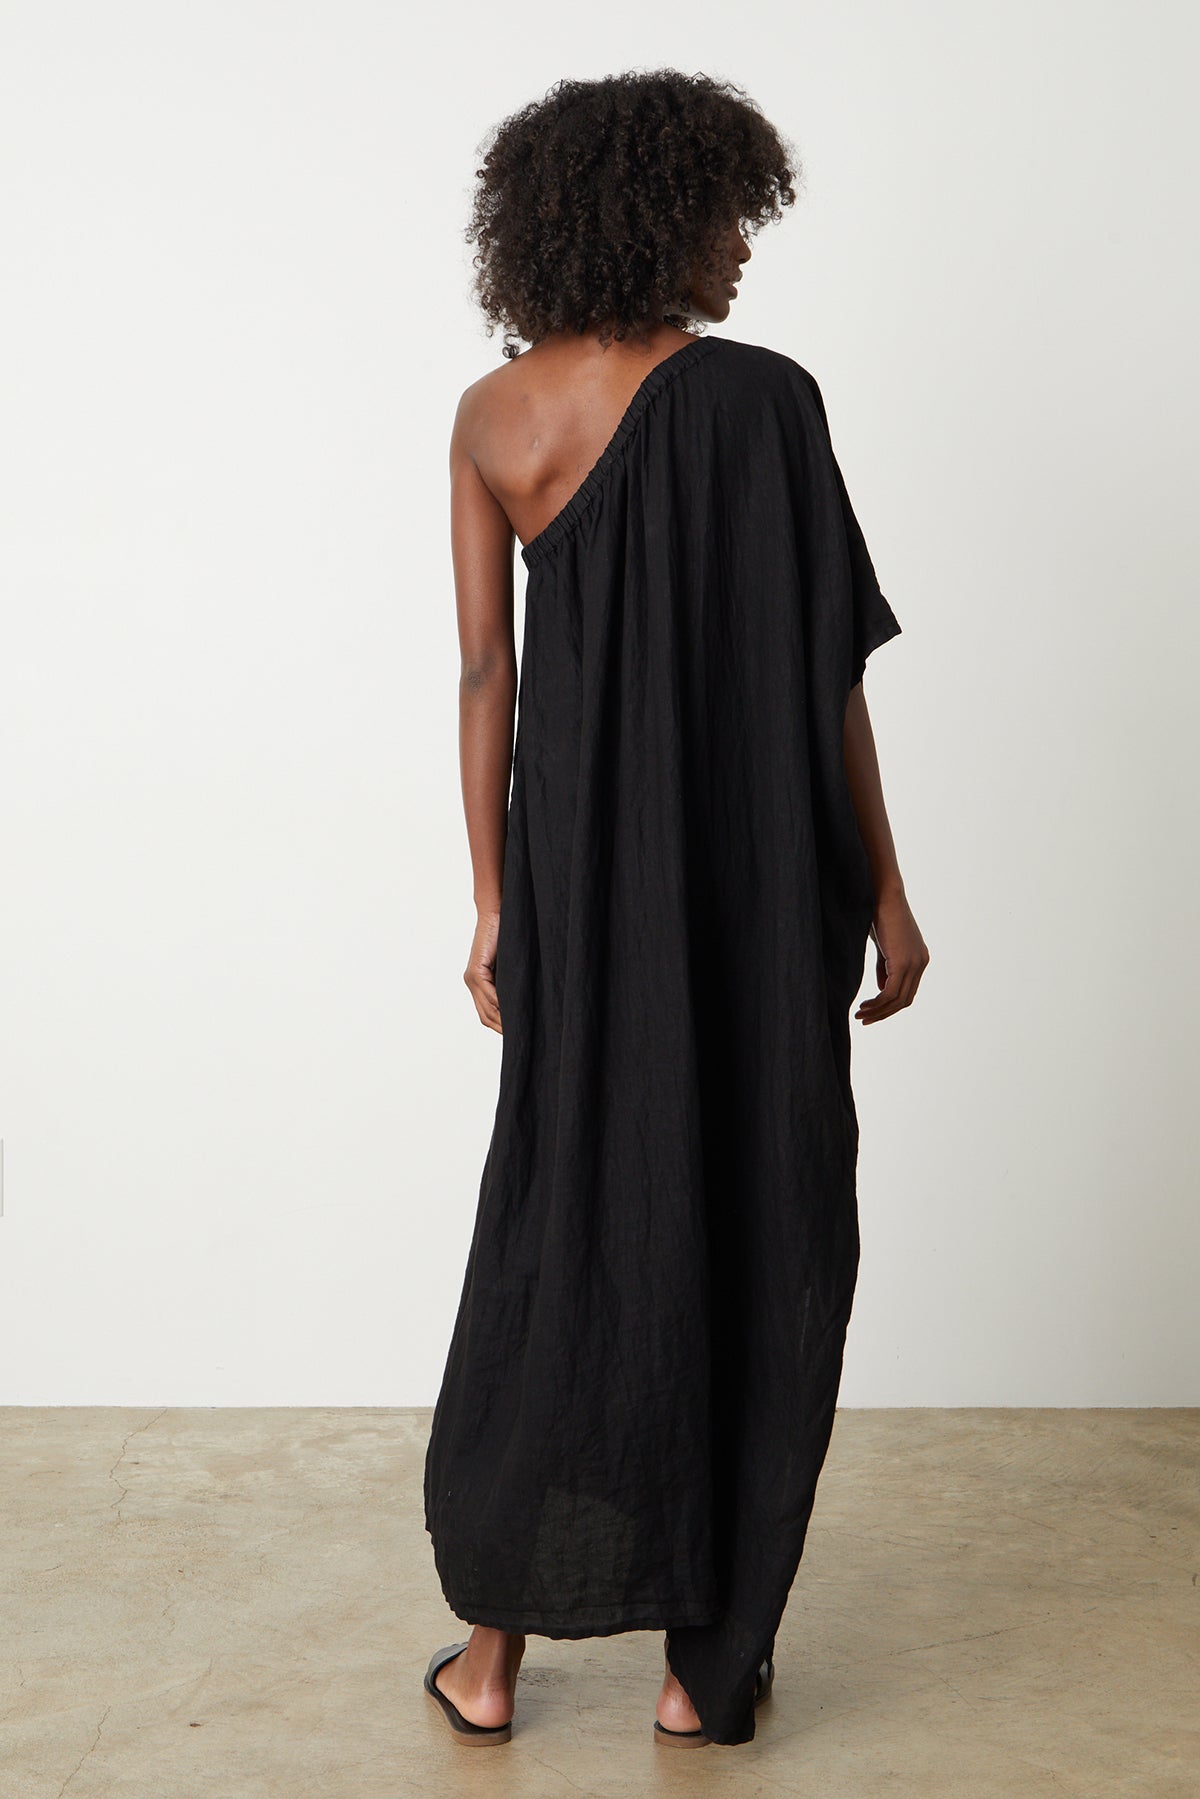 Andrea Linen Dress in black with black slides full length back-26255699476673